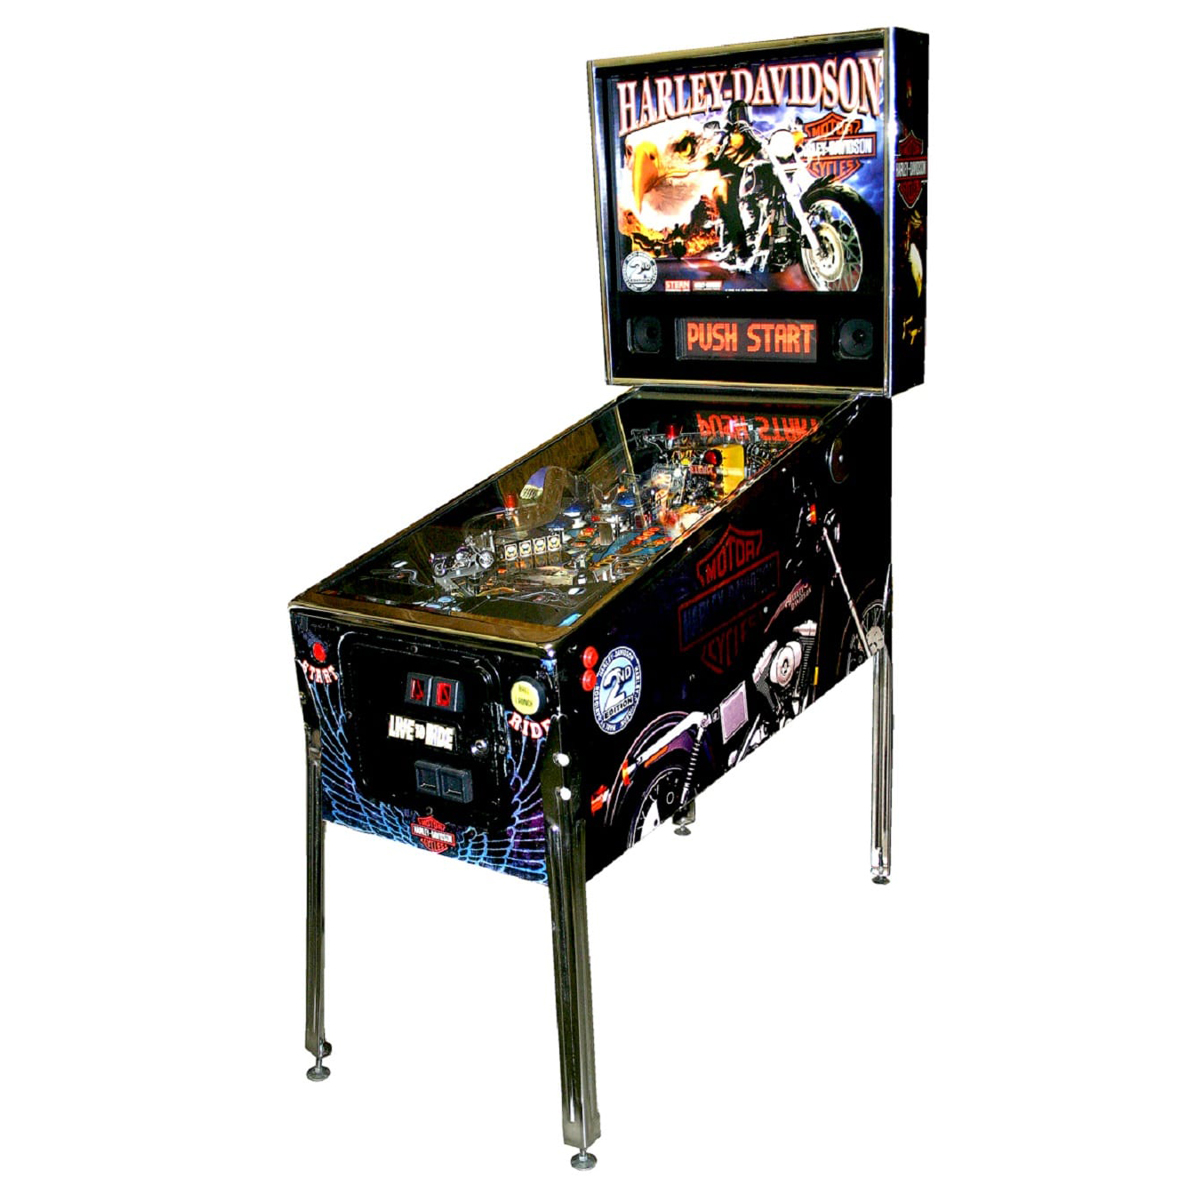 Harley Davidson Pinball 1 - The Amazing Spider-Man Pinball Machine